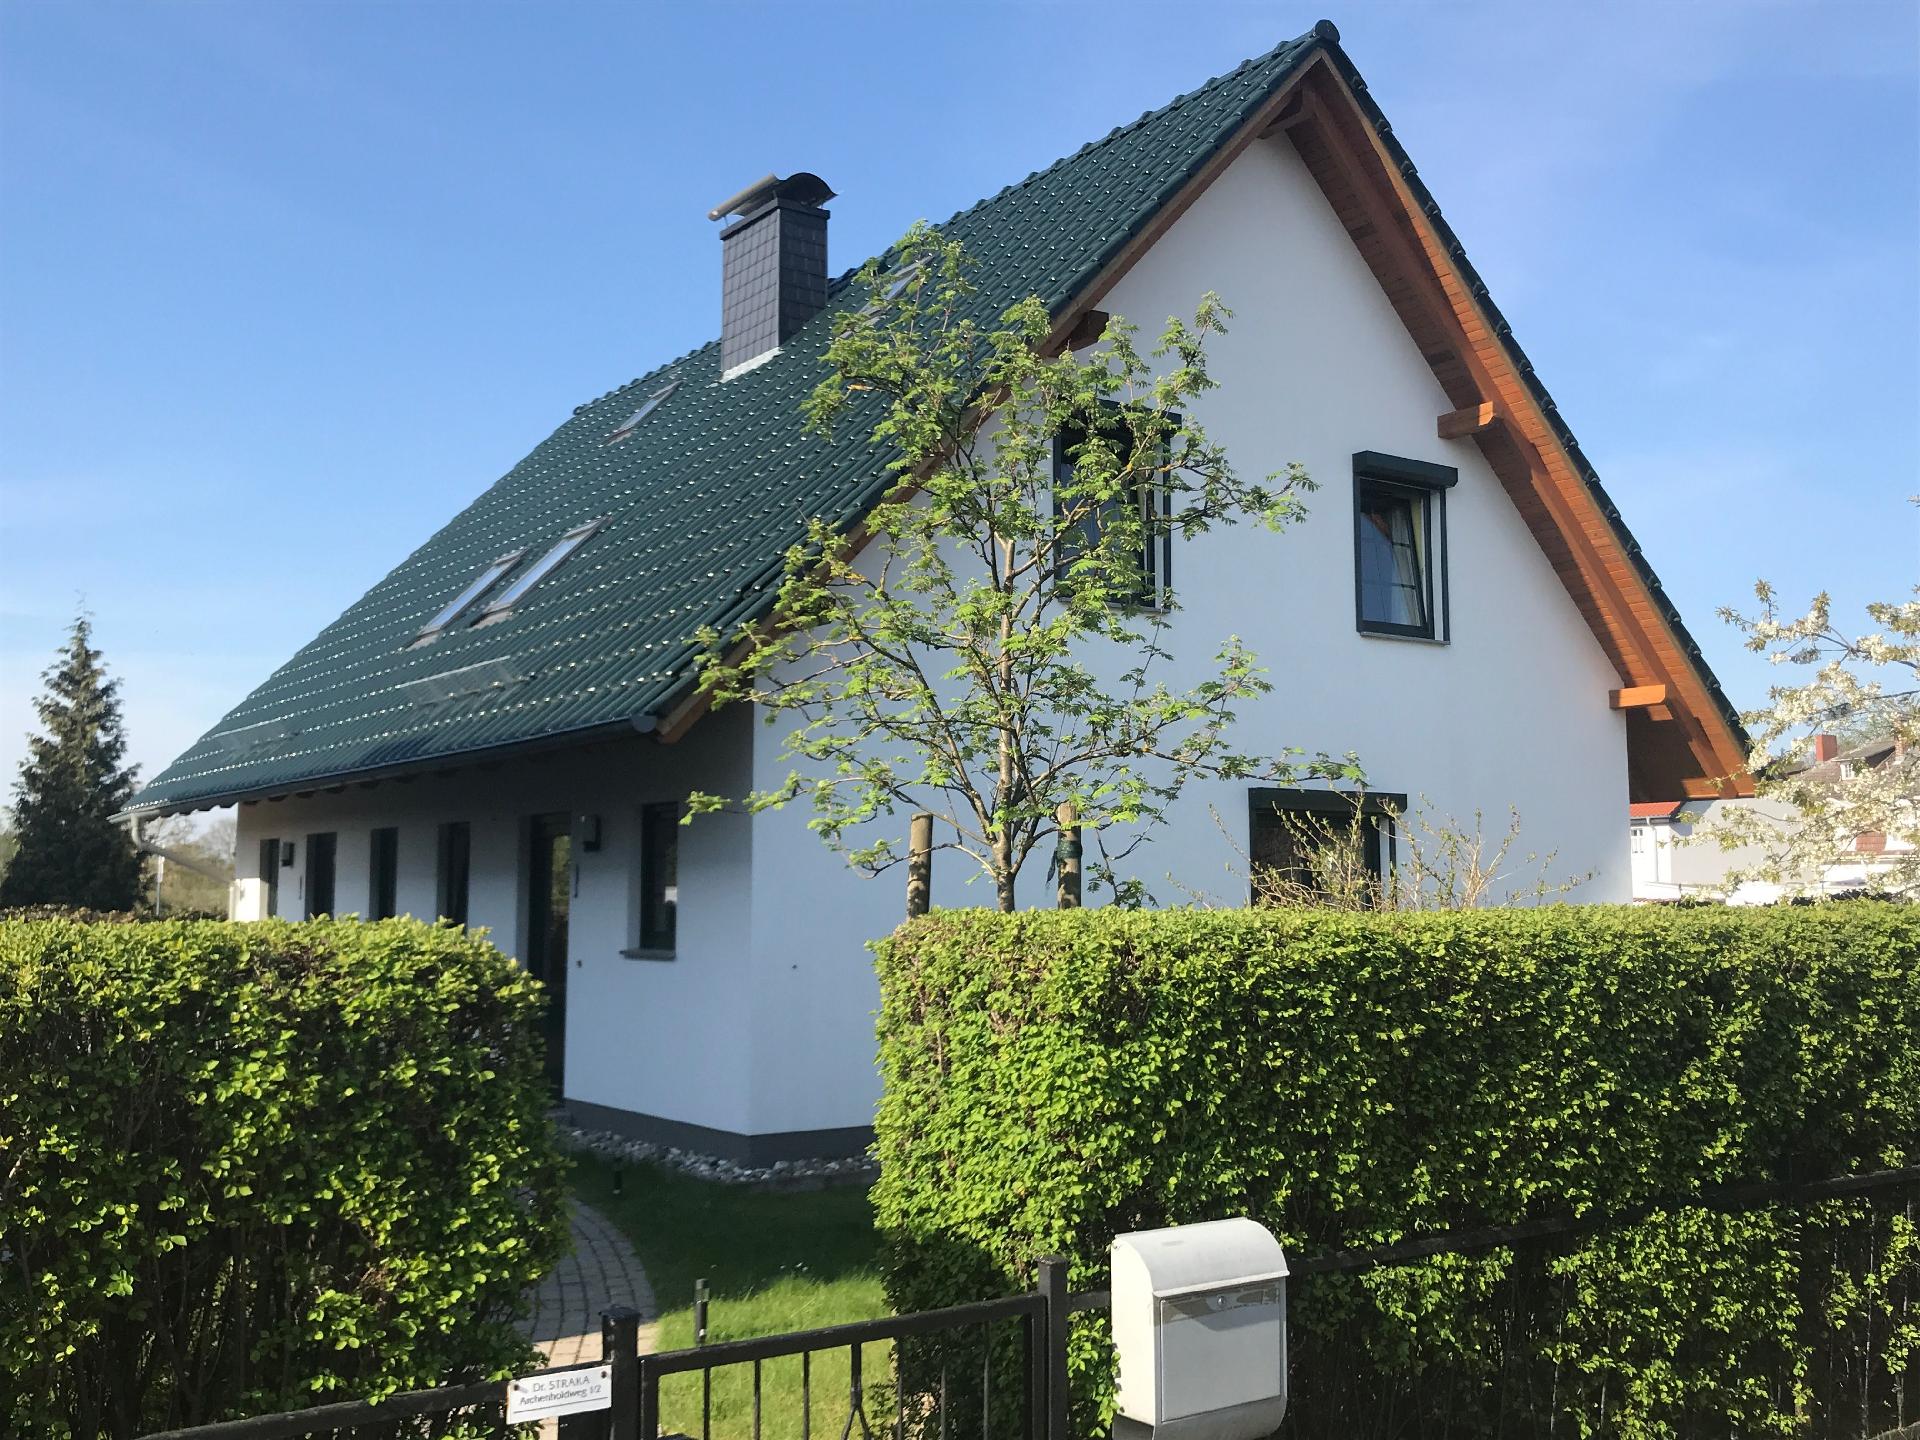 Ferienhaus in Bansin mit Garten, Terrasse und Gril Ferienhaus in Mecklenburg Vorpommern